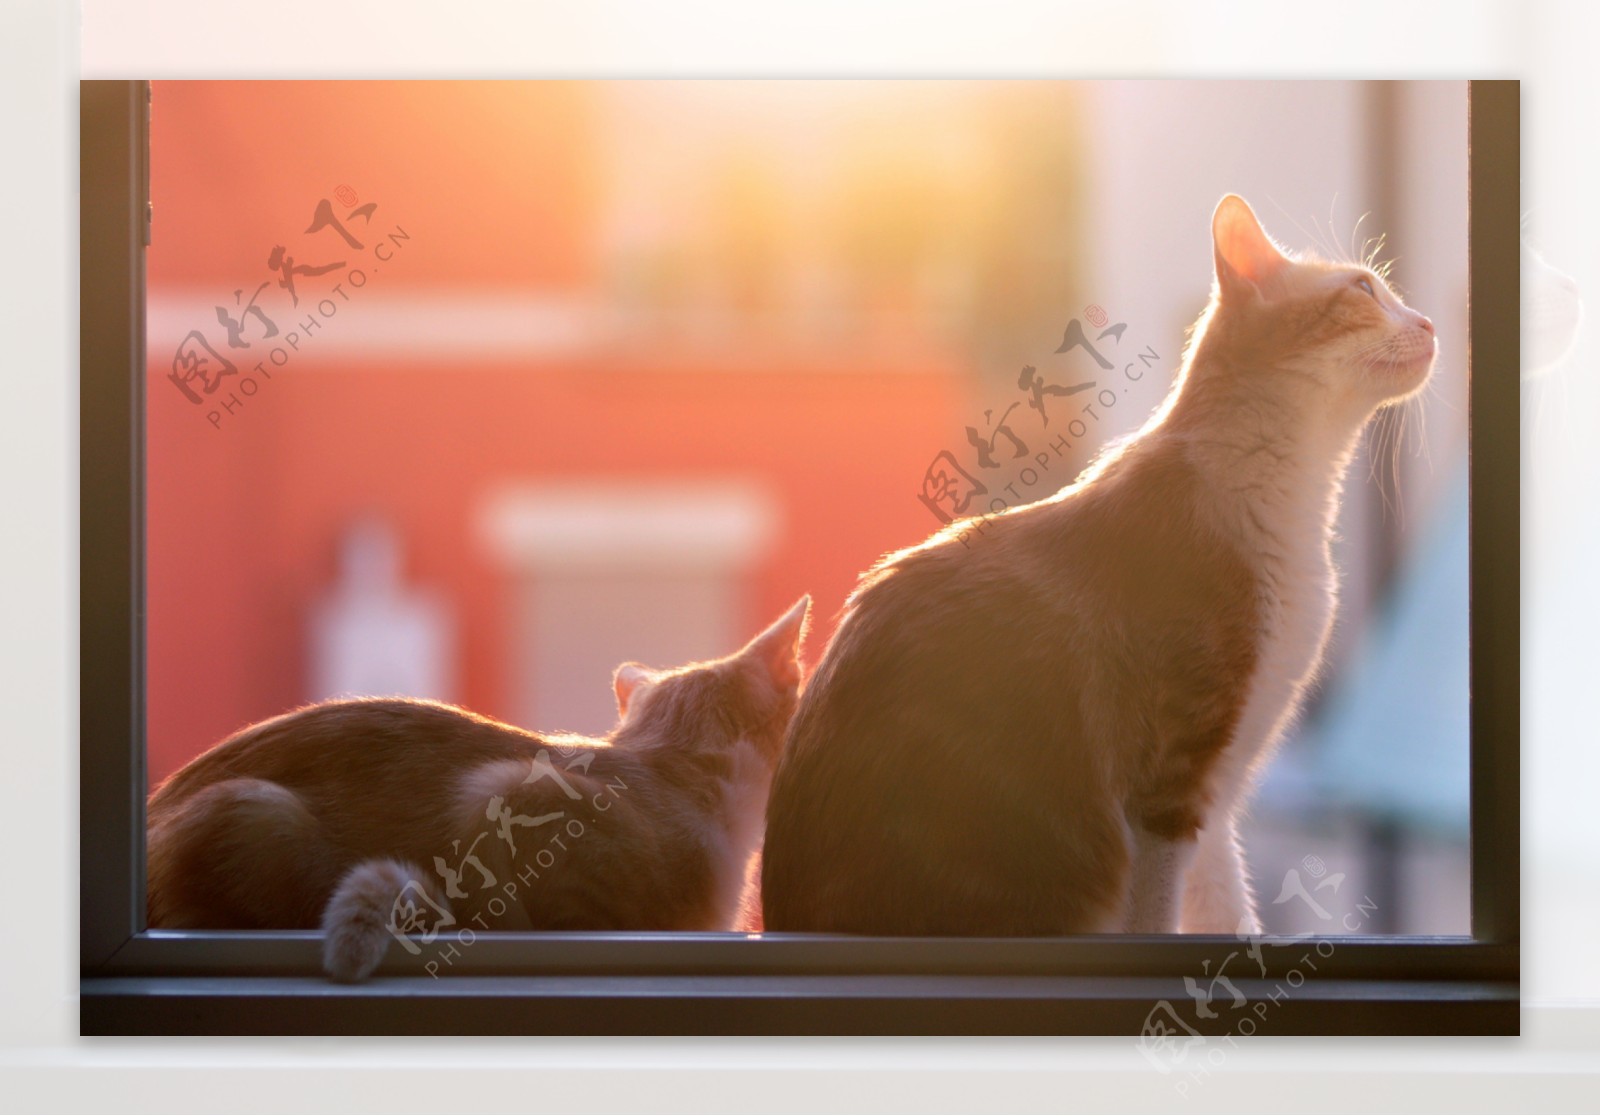 阳光照射下窗台上的猫咪图片